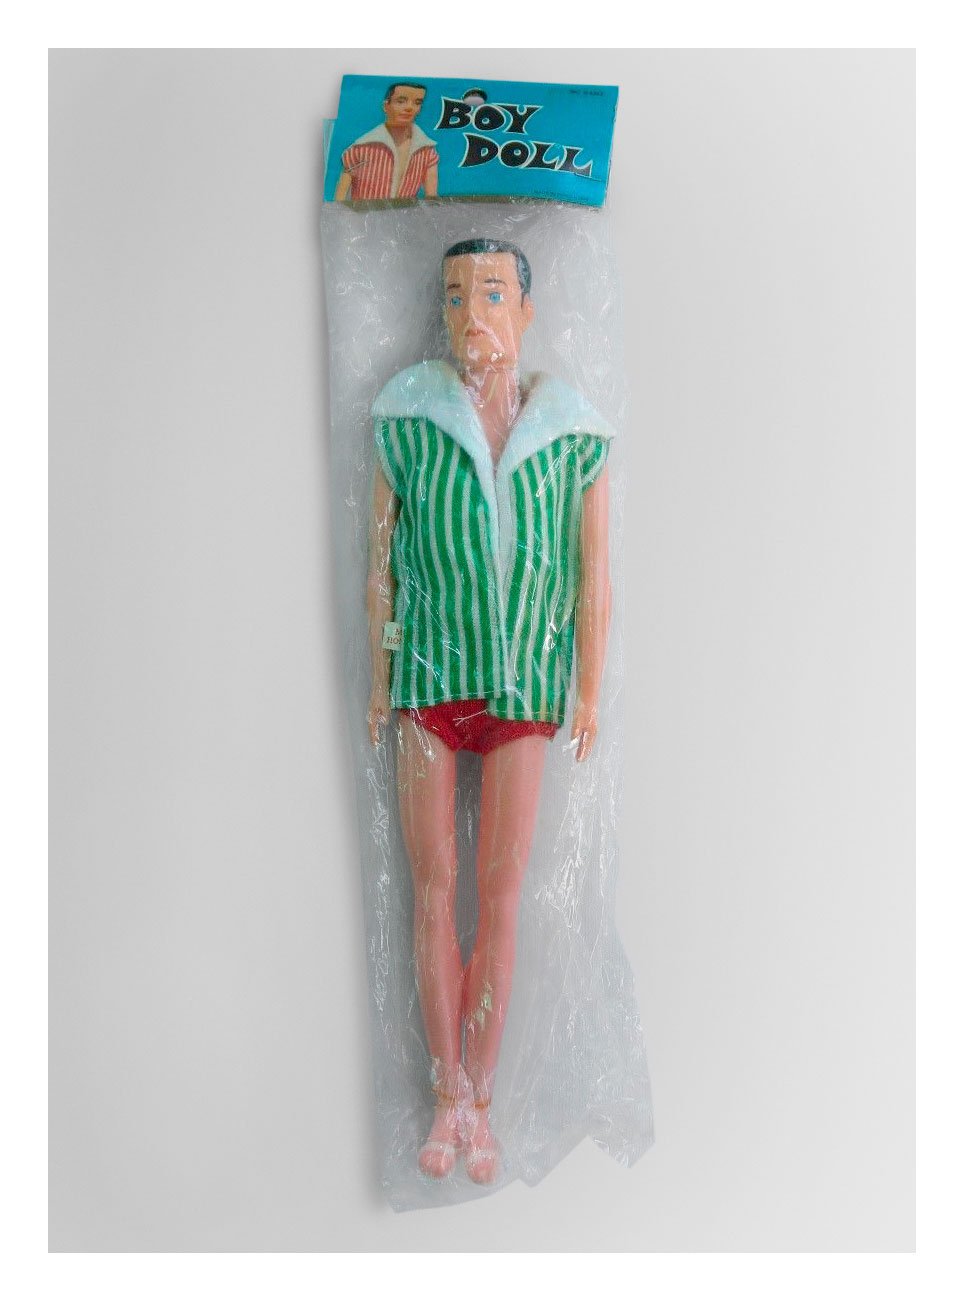 Boy Doll in original packaging